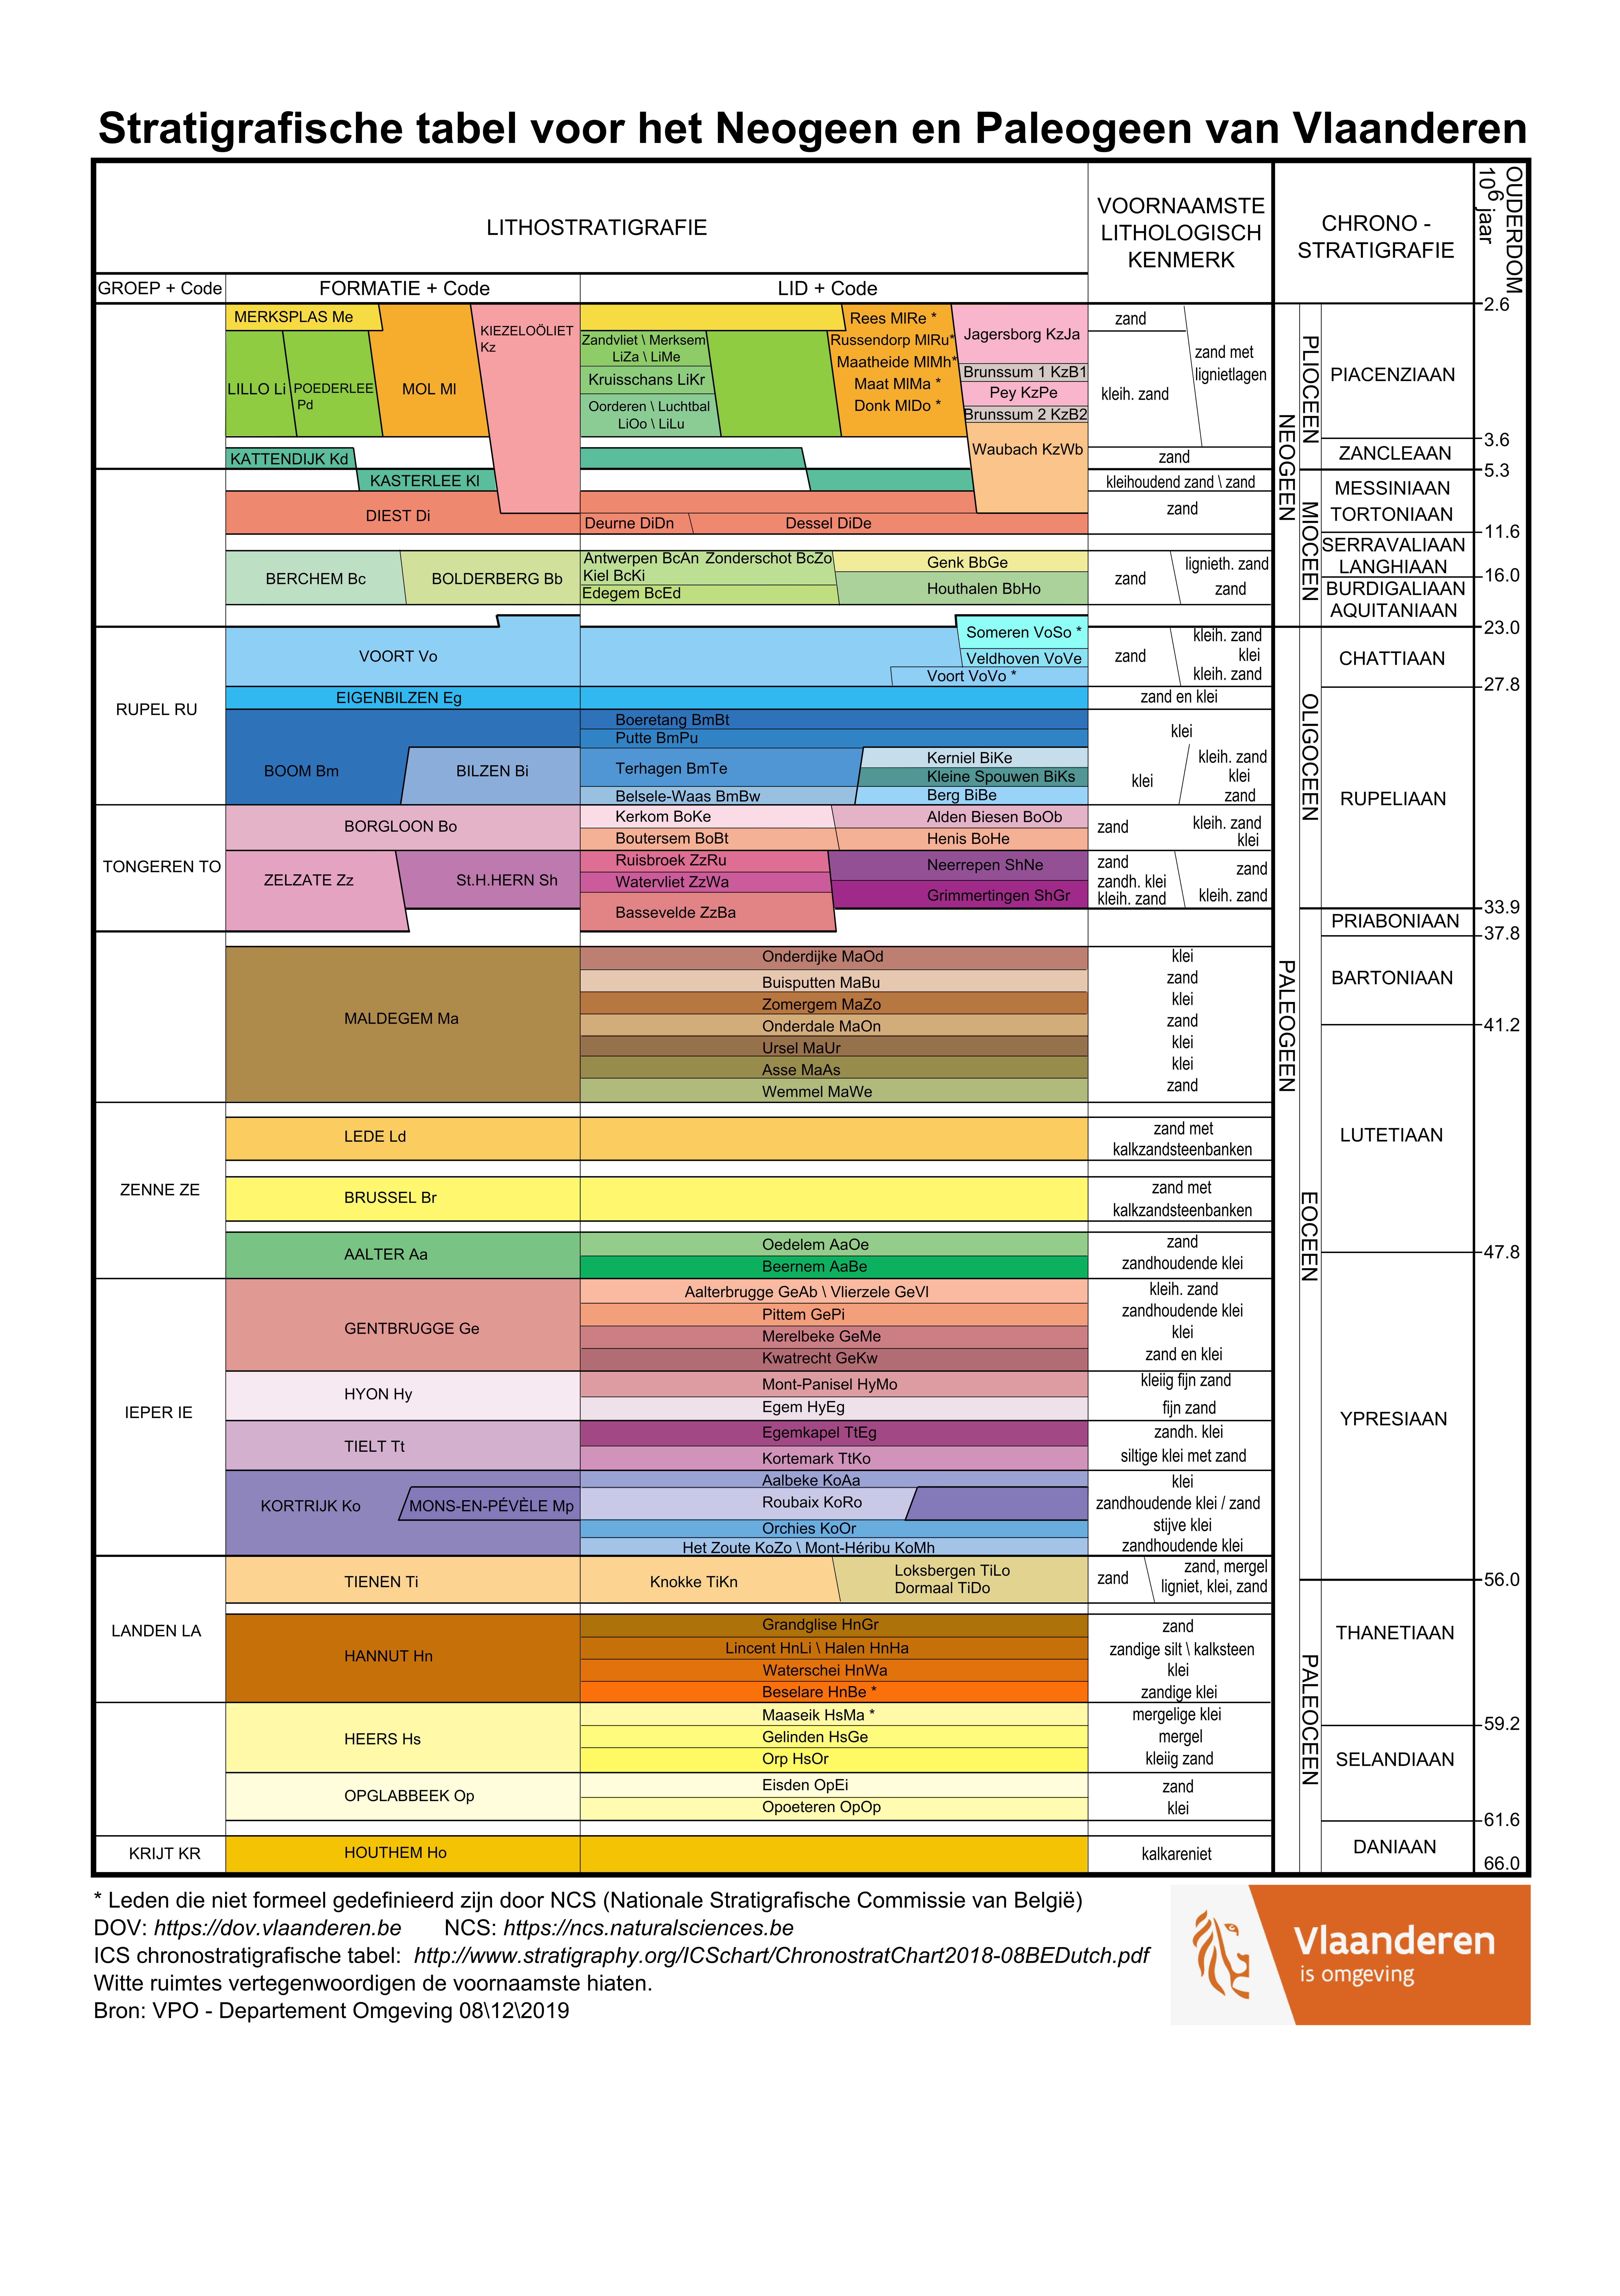 Stratigrafische tabel van Neogeen en Paleogeen